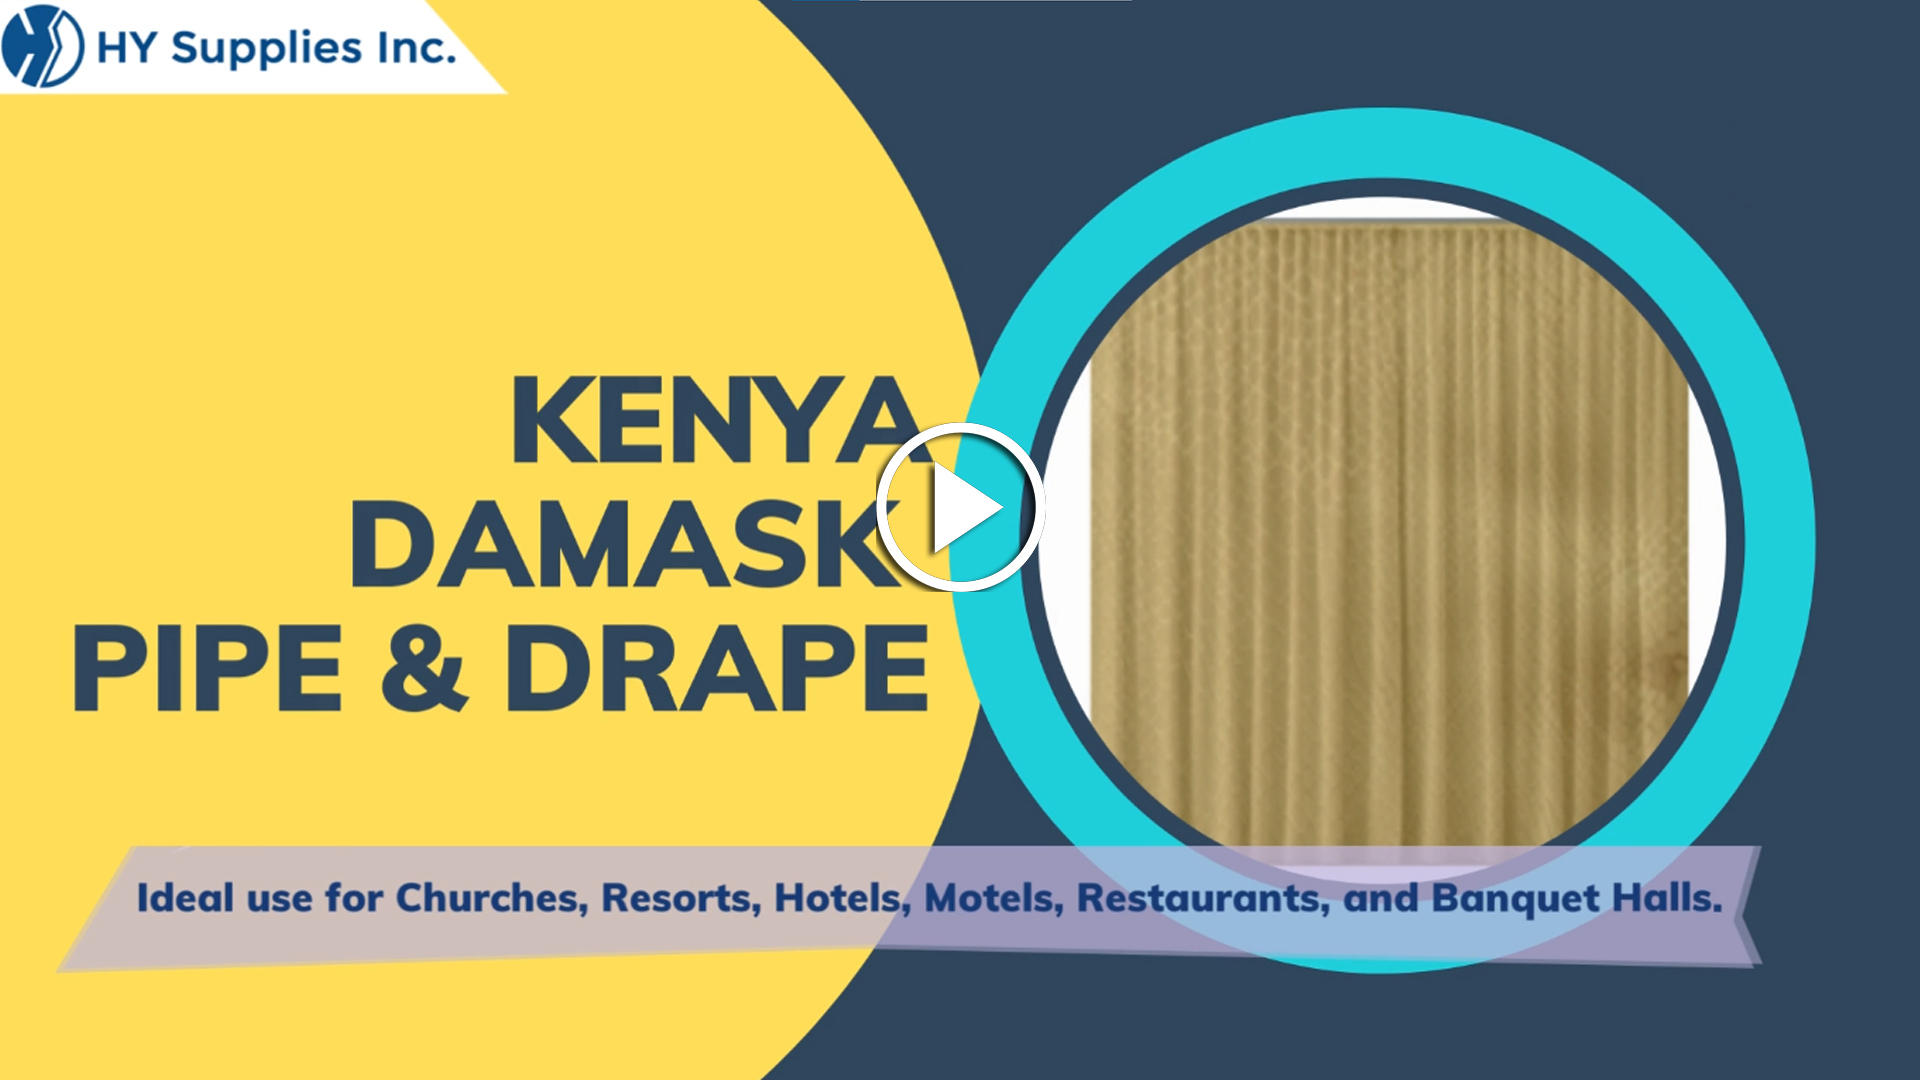 Kenya Damask Pipe & Drape